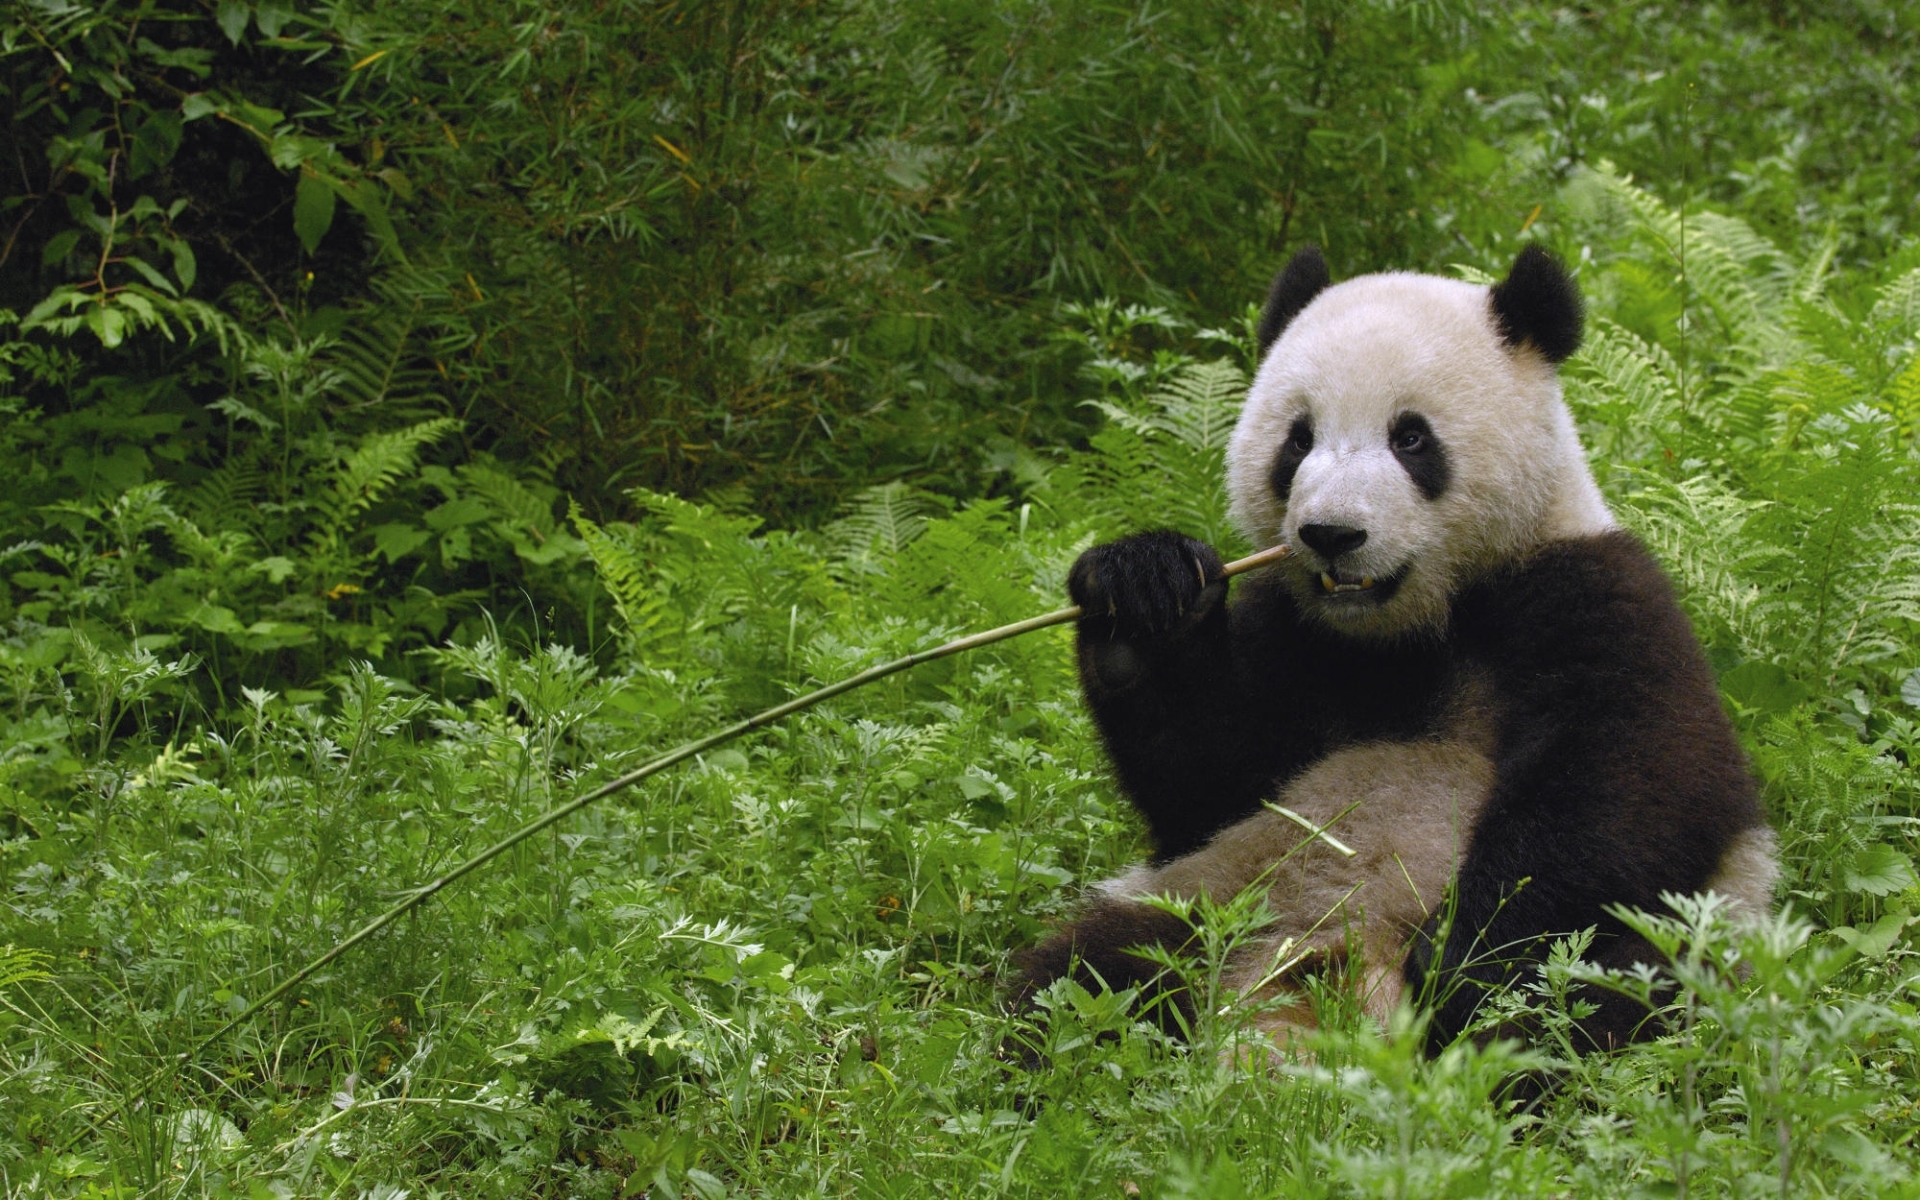 animals, grass, bears, pandas, green download HD wallpaper